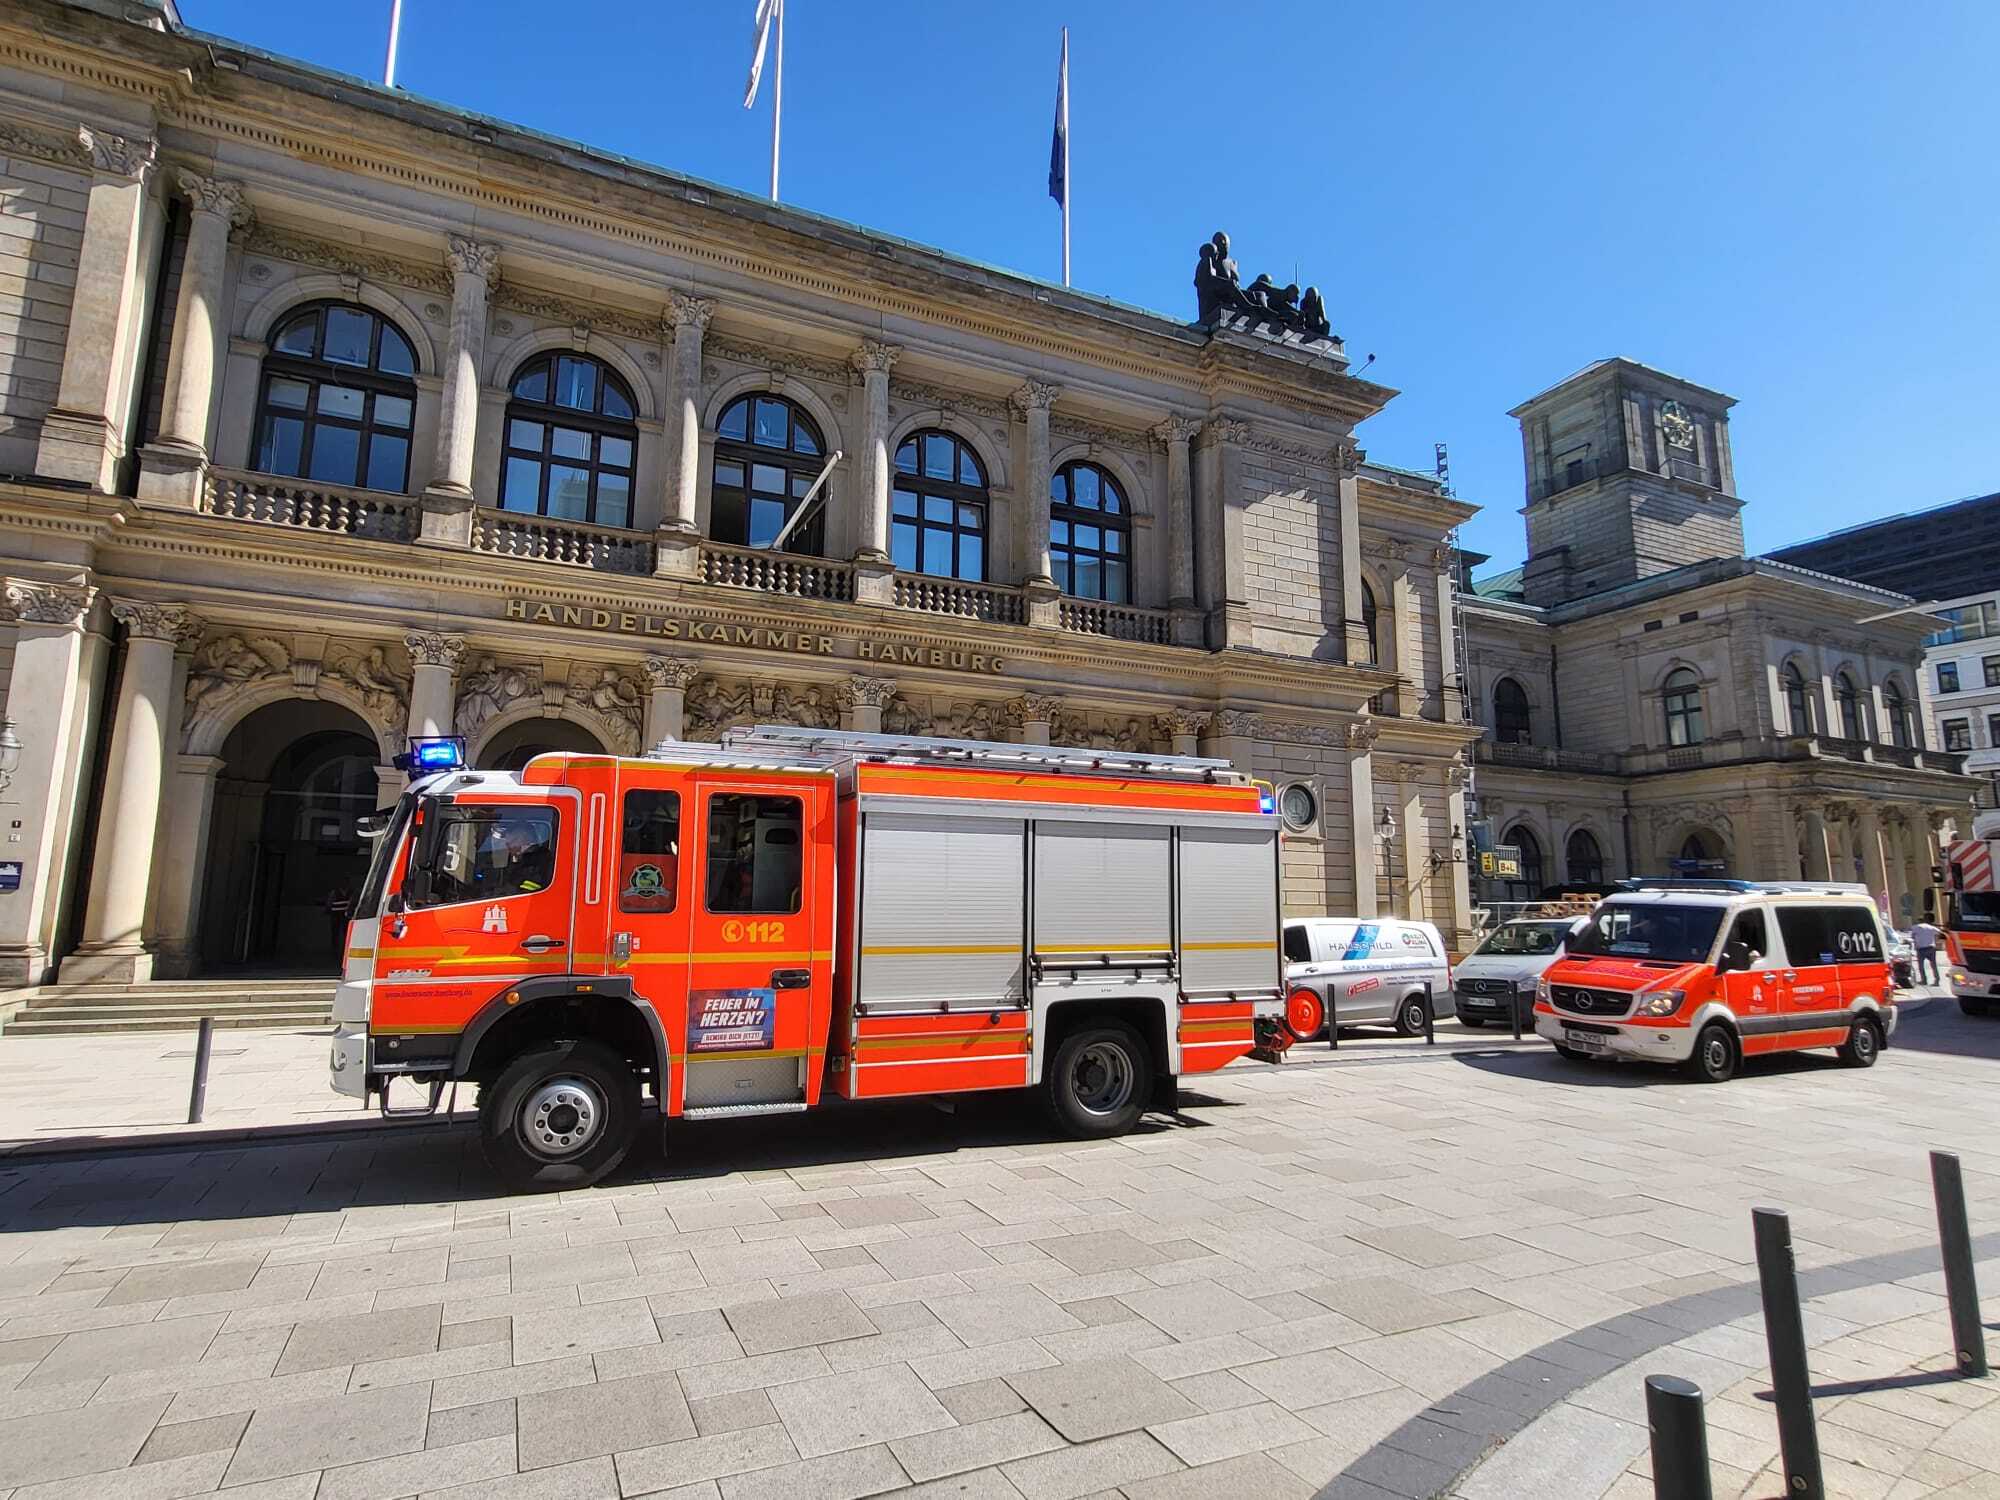 Handelskammer Hamburg musste aufgrund einer technischen Störung evakuiert werden